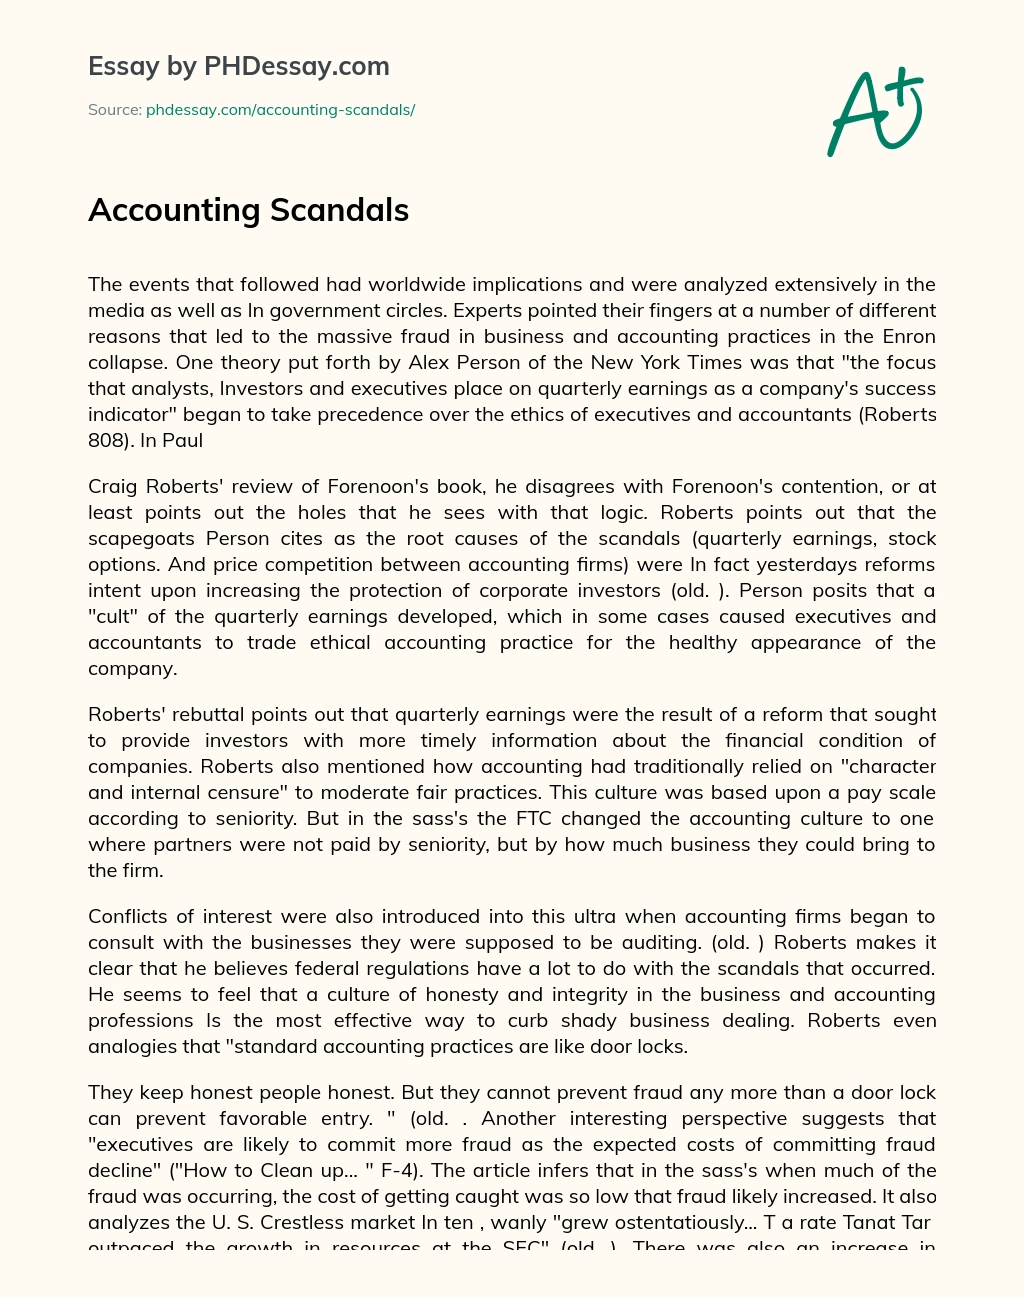 Accounting Scandals Narrative Essay essay